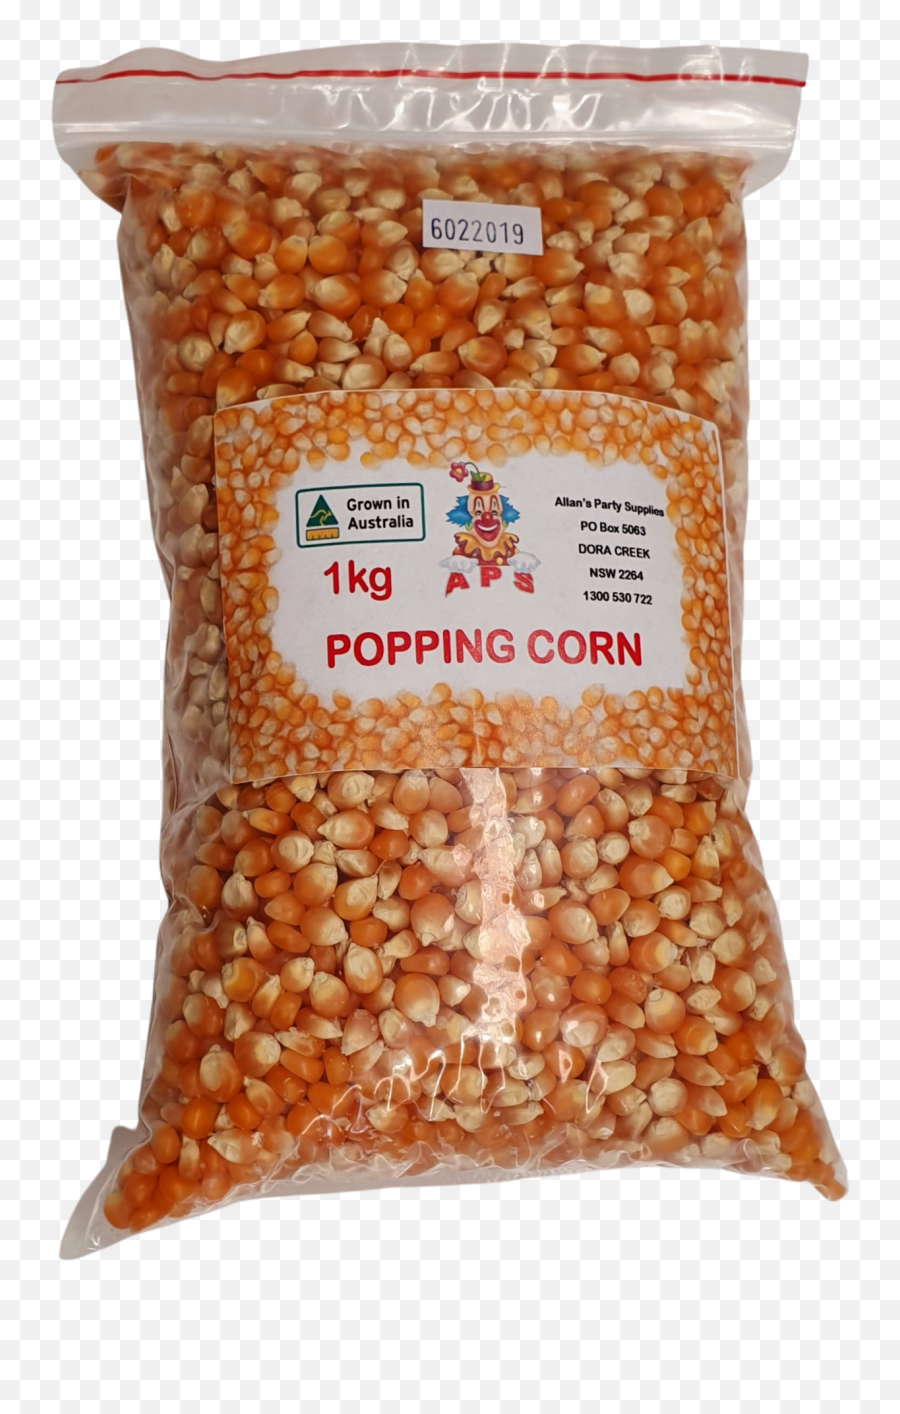 5kg Premium Popcorn Kernels Business U0026 Industrial Other Emoji,Popcorn Kernel Png